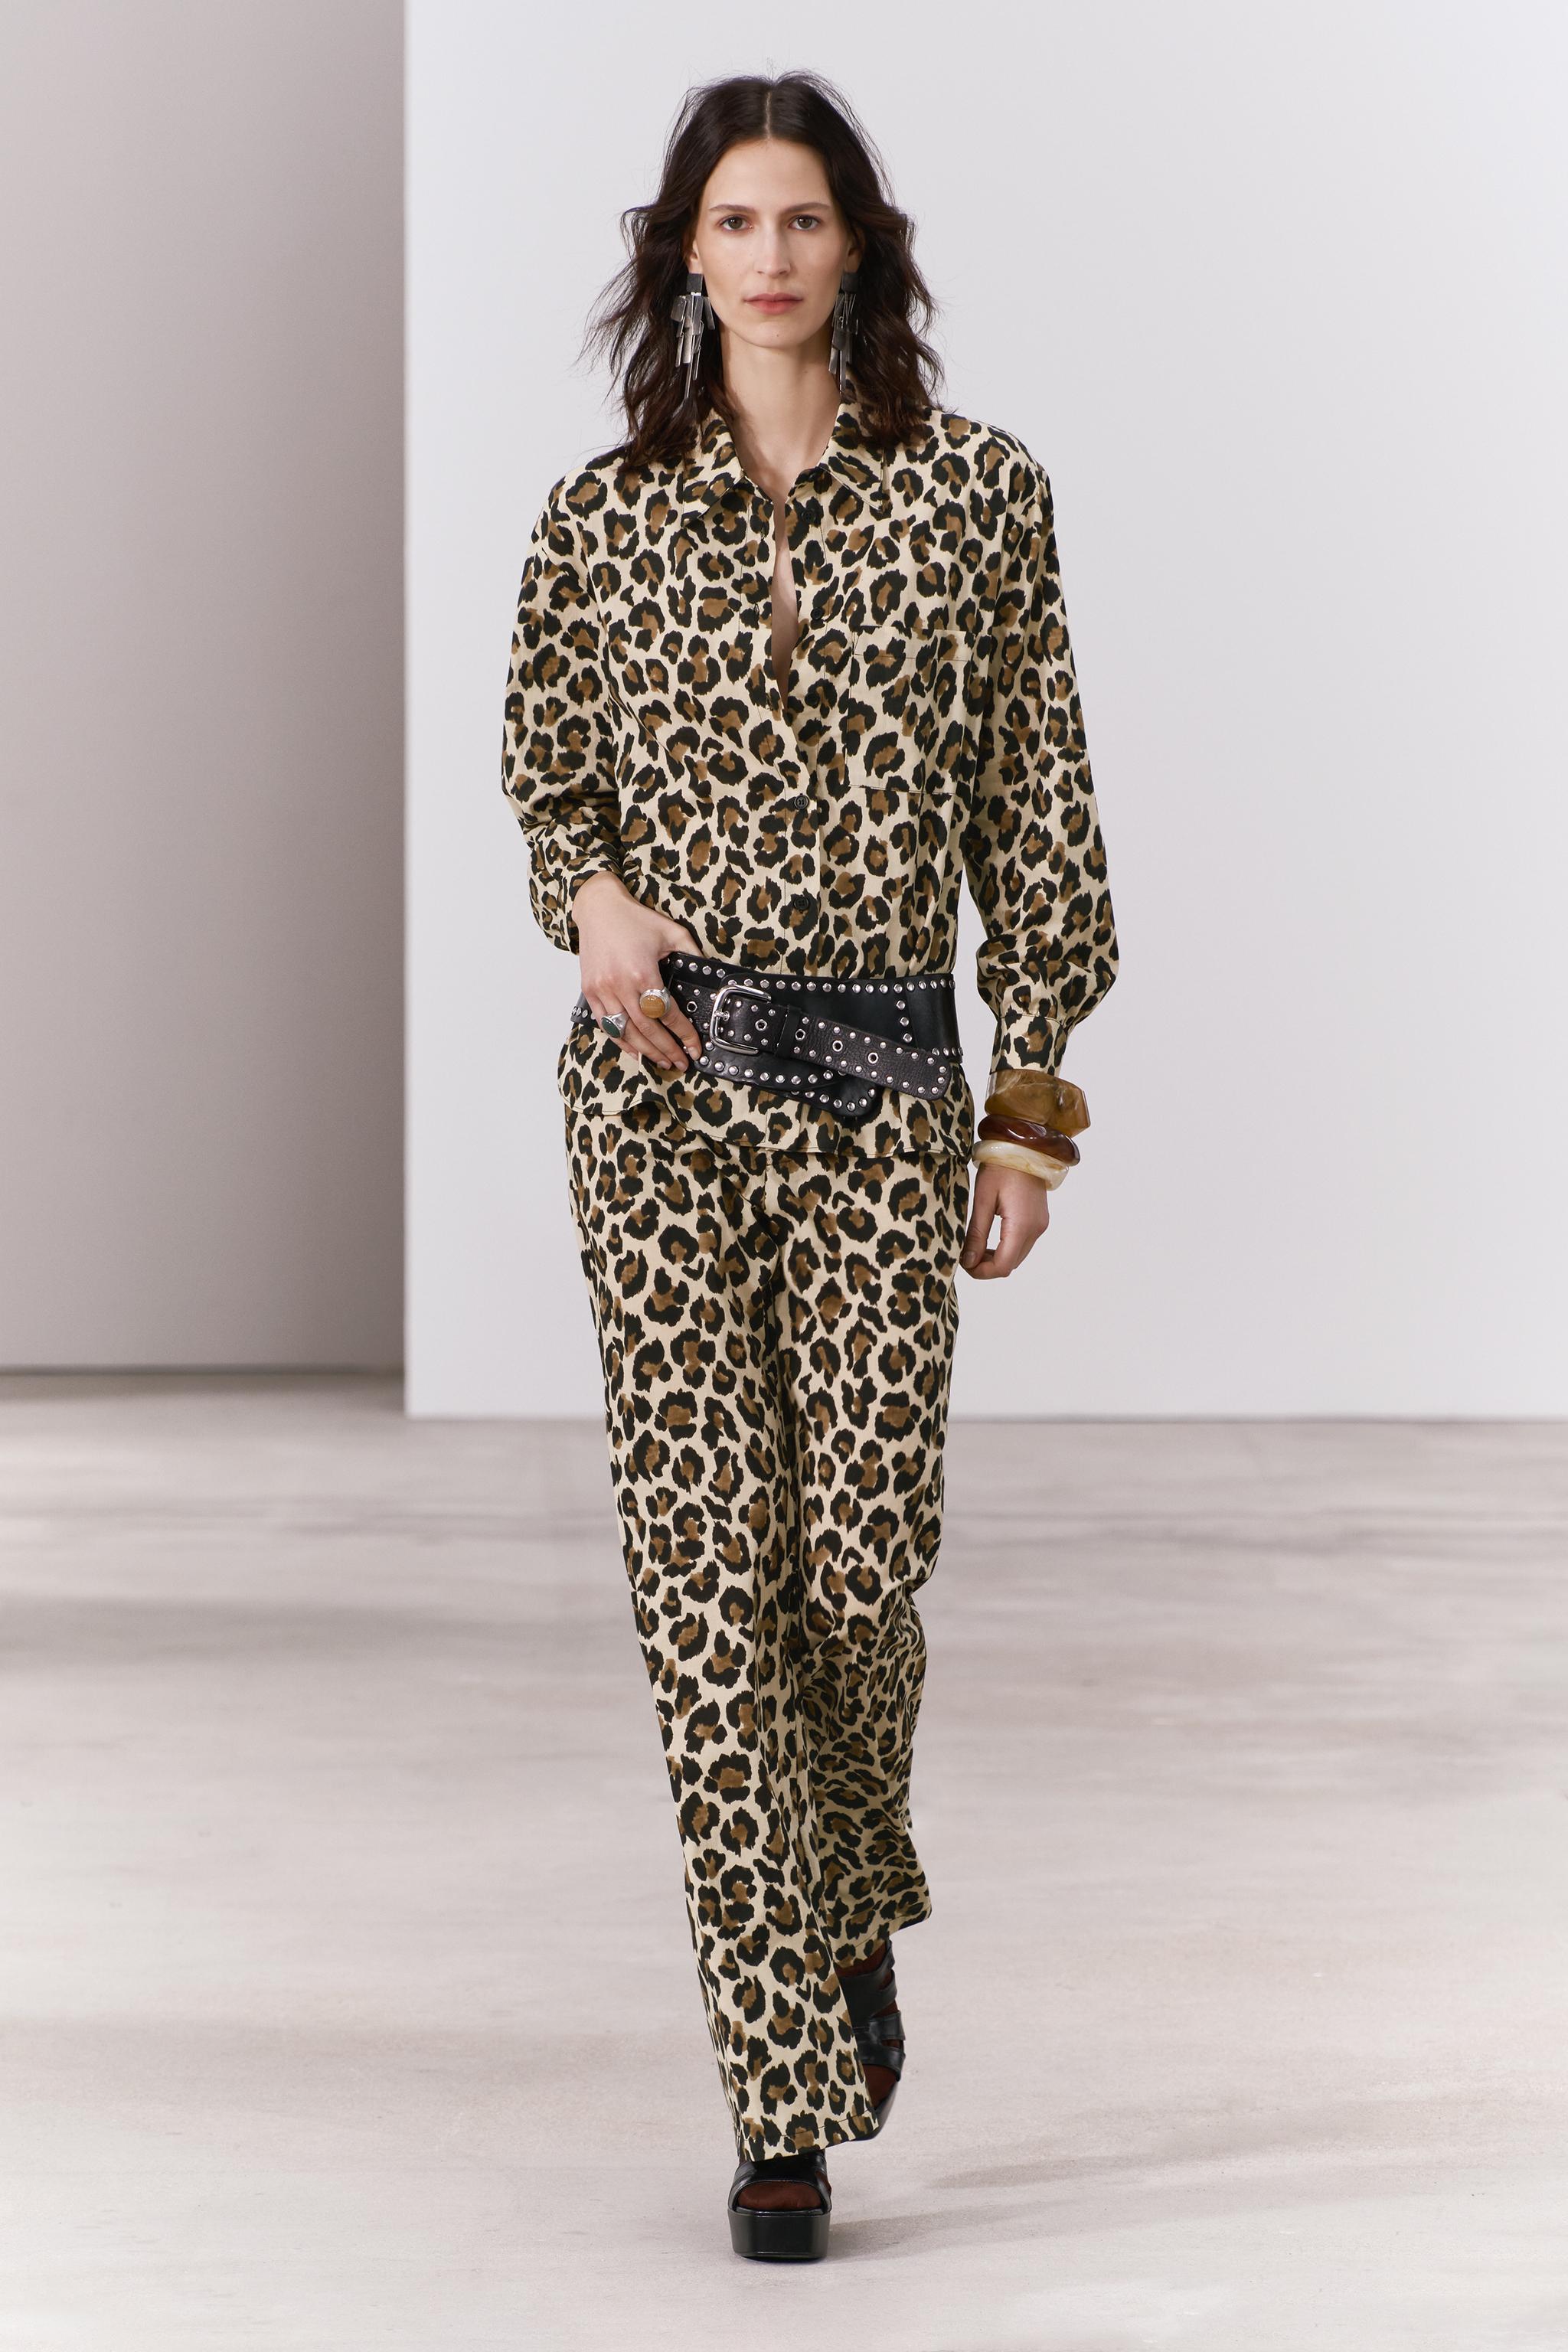 Pantalones leopardo Zara - Estos pantalones son los más vendidos